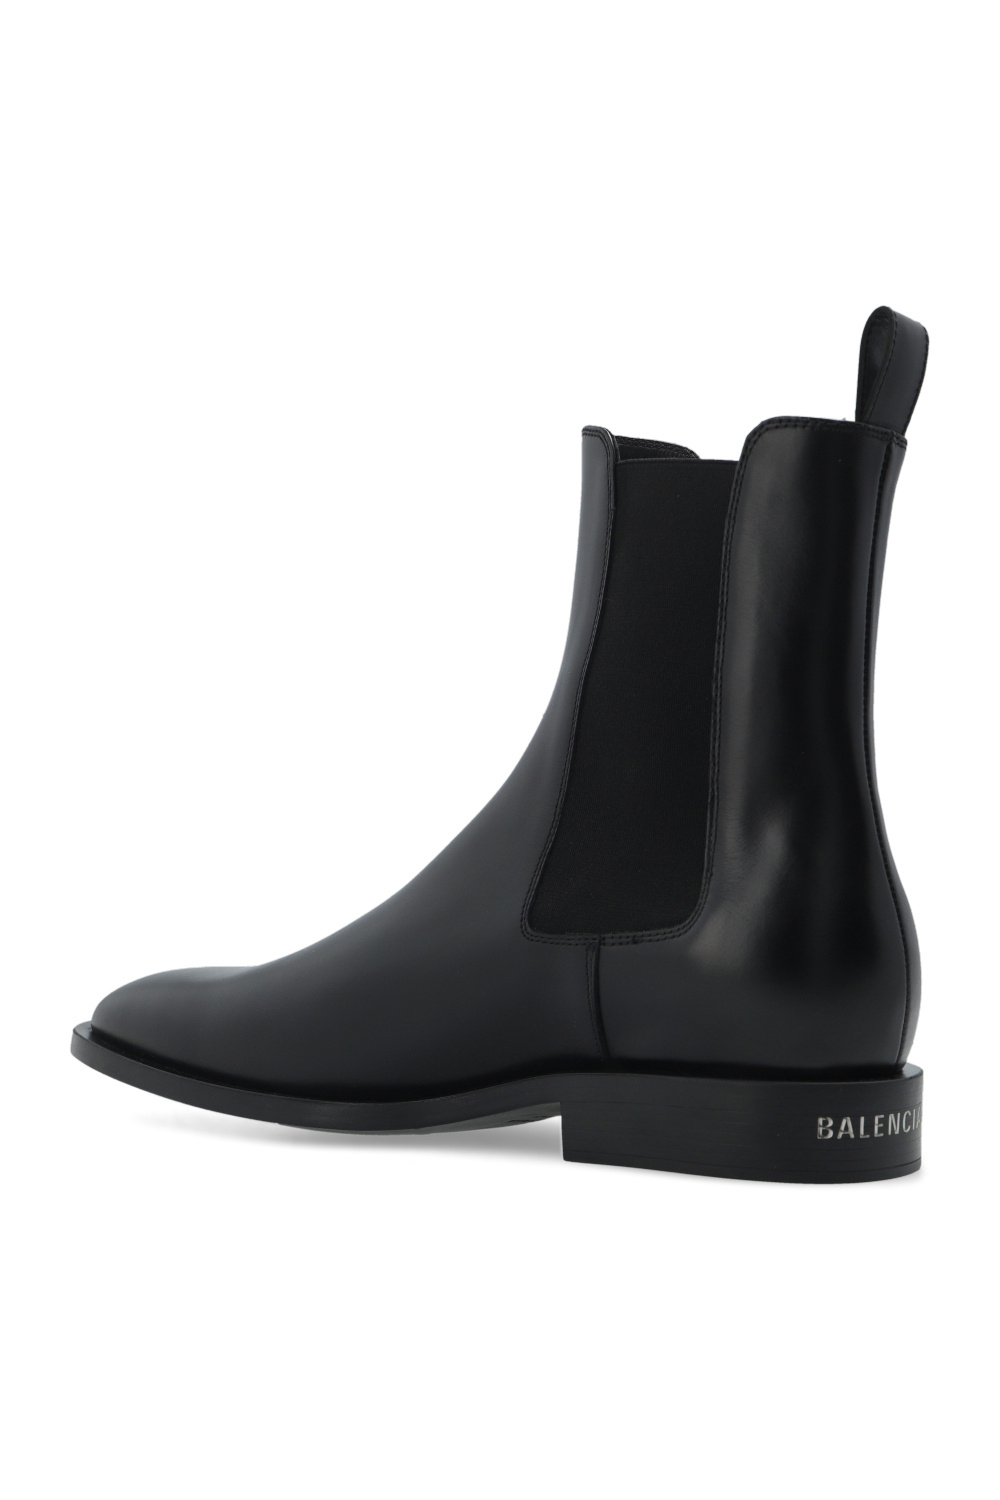 Balenciaga ‘Wallstreet’ pie boots